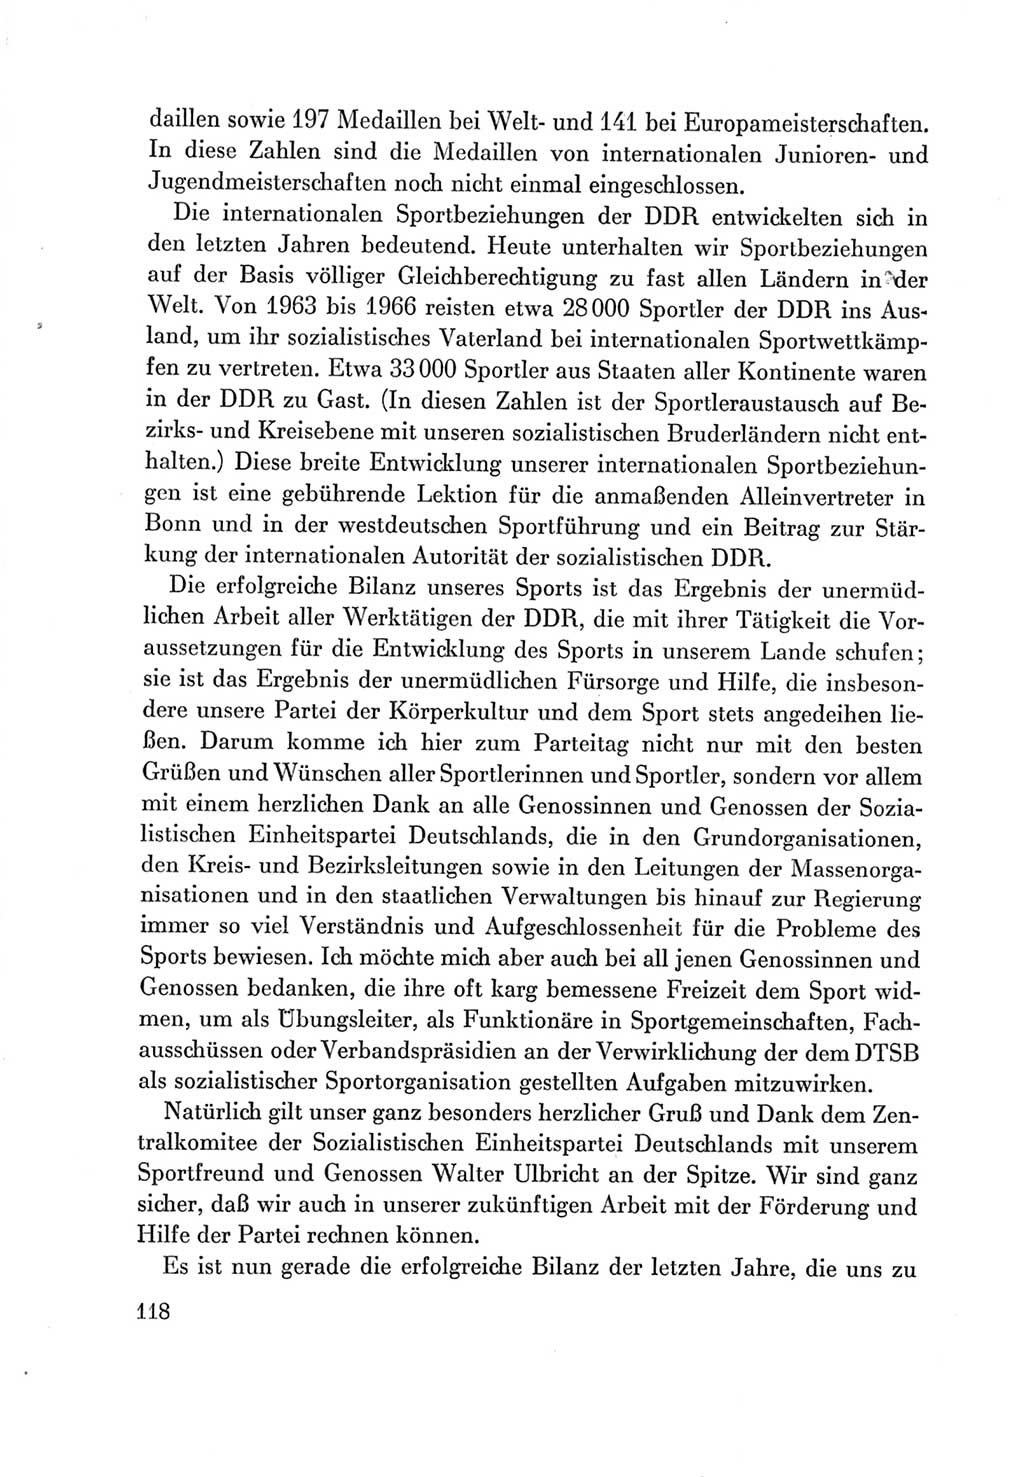 Protokoll der Verhandlungen des Ⅶ. Parteitages der Sozialistischen Einheitspartei Deutschlands (SED) [Deutsche Demokratische Republik (DDR)] 1967, Band Ⅲ, Seite 118 (Prot. Verh. Ⅶ. PT SED DDR 1967, Bd. Ⅲ, S. 118)